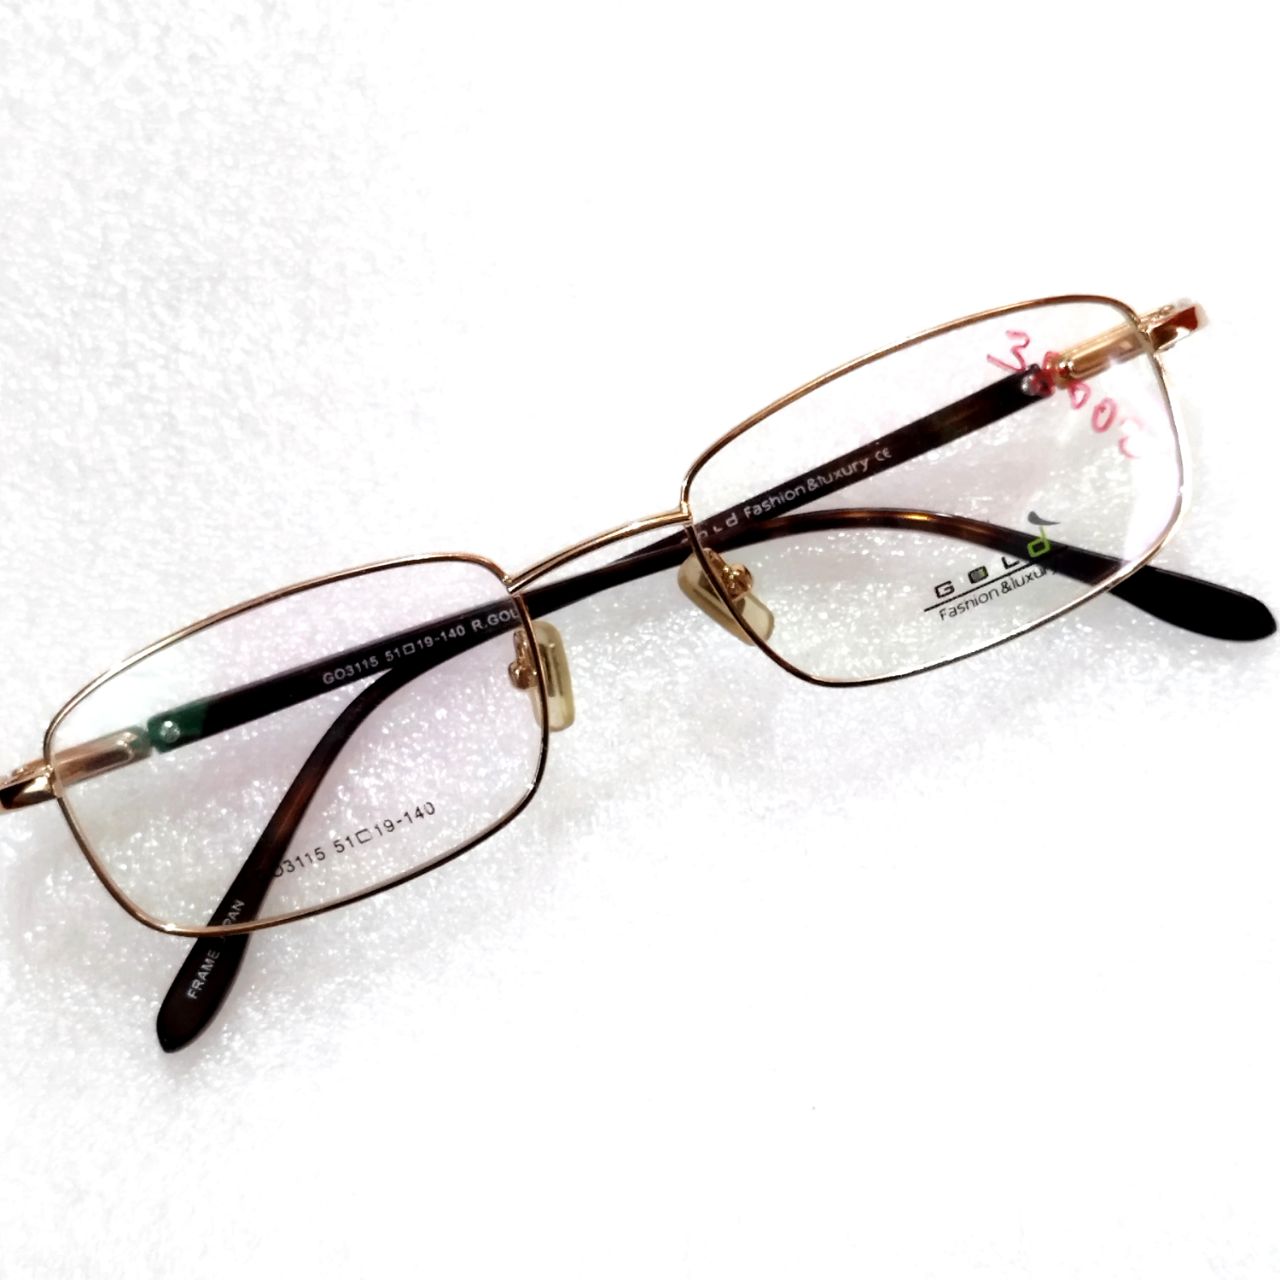 Gold Full Frame Progressive Multifocal No-Line Bifocal Glasses for Men and Women